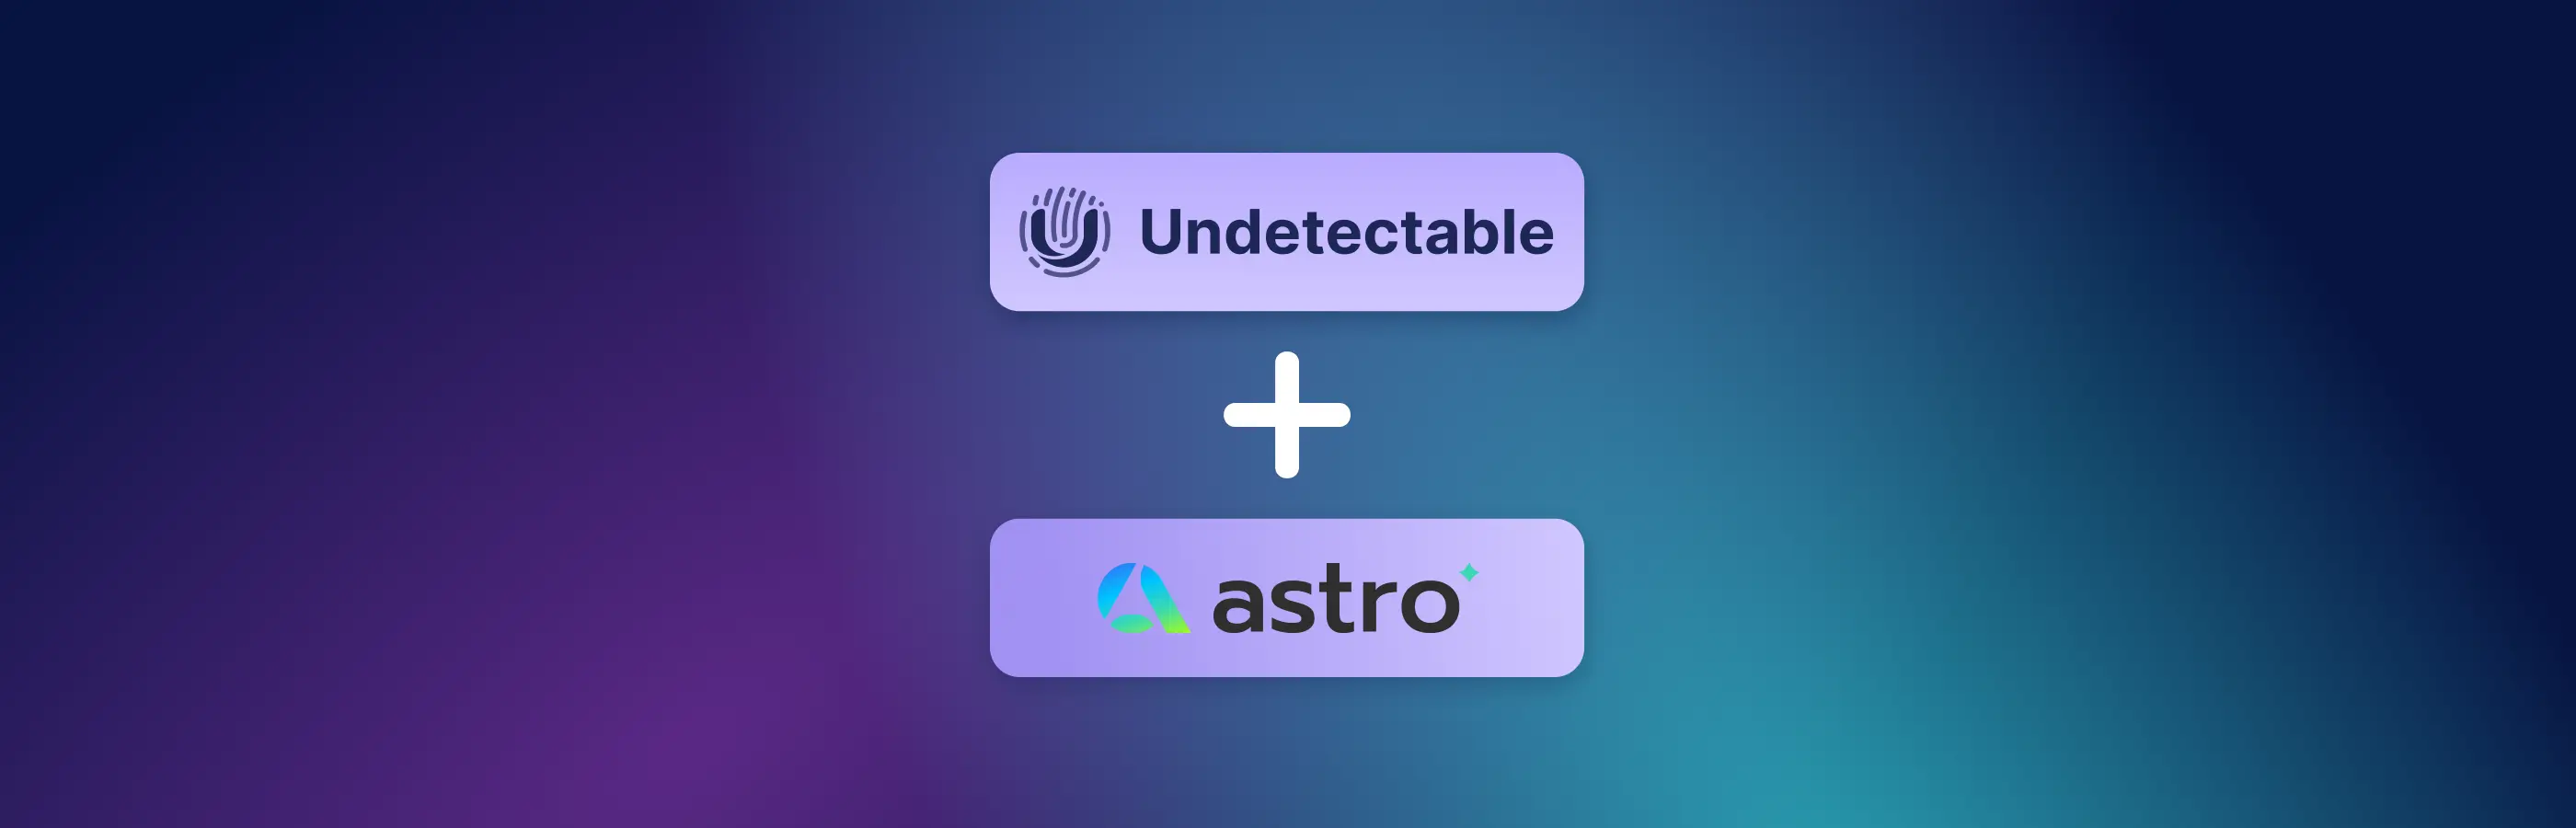 Как использовать Astro с Undetectable